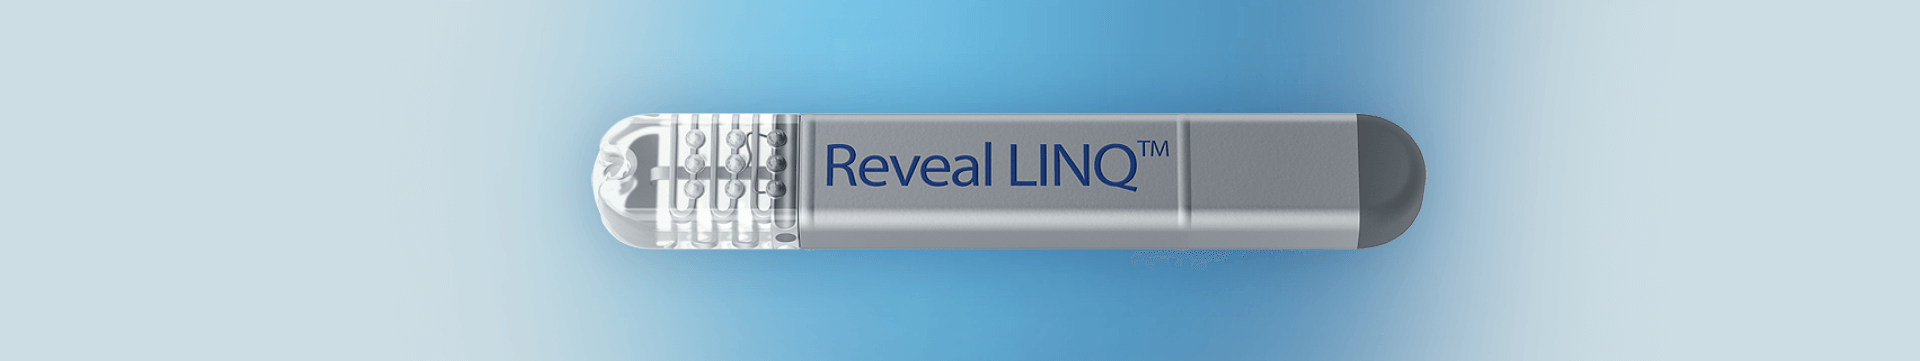 Reveal linq – implatabilni srčani monitor